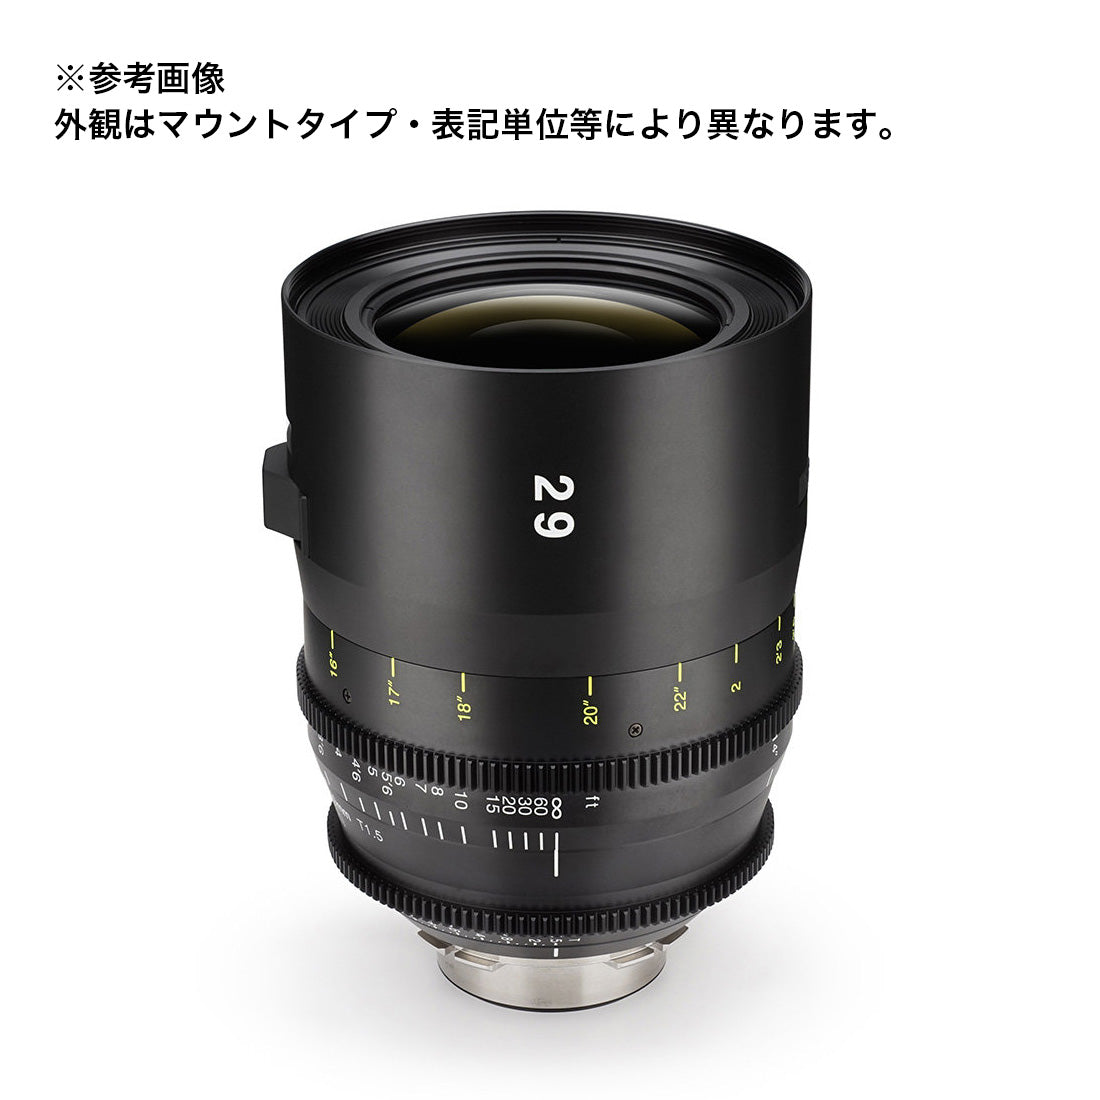 Tokina(トキナー) シネマプライムレンズ VISTA 29mm T1.5CINEMA LENS EFマウント フィート表記 [2642